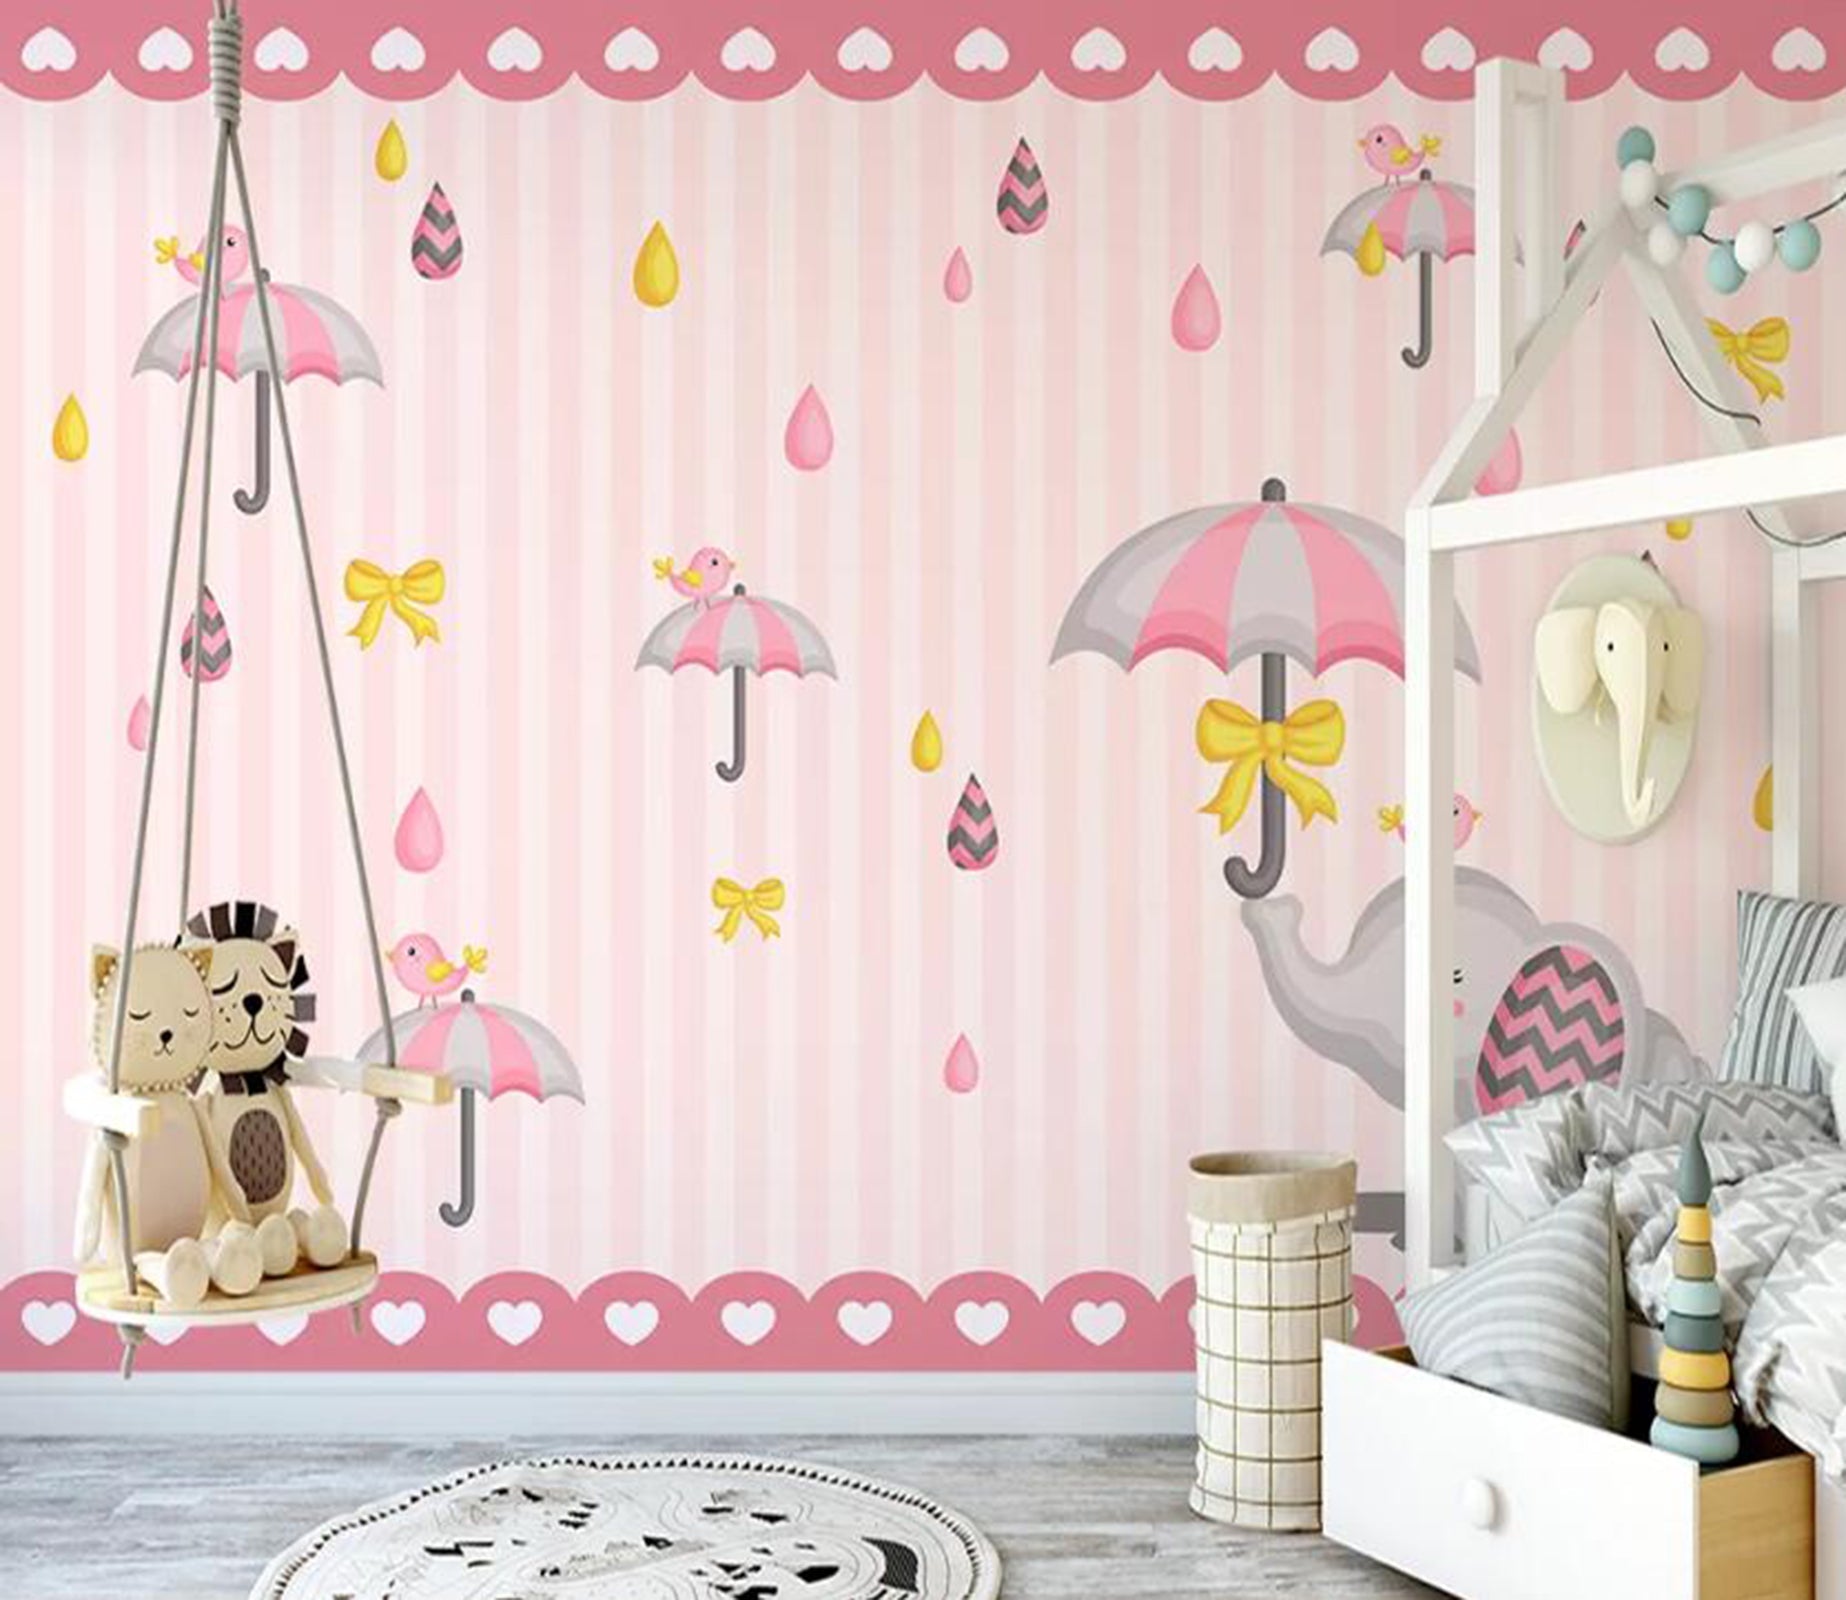 3D Pink Umbrella WC49 Wall Murals Wallpaper AJ Wallpaper 2 